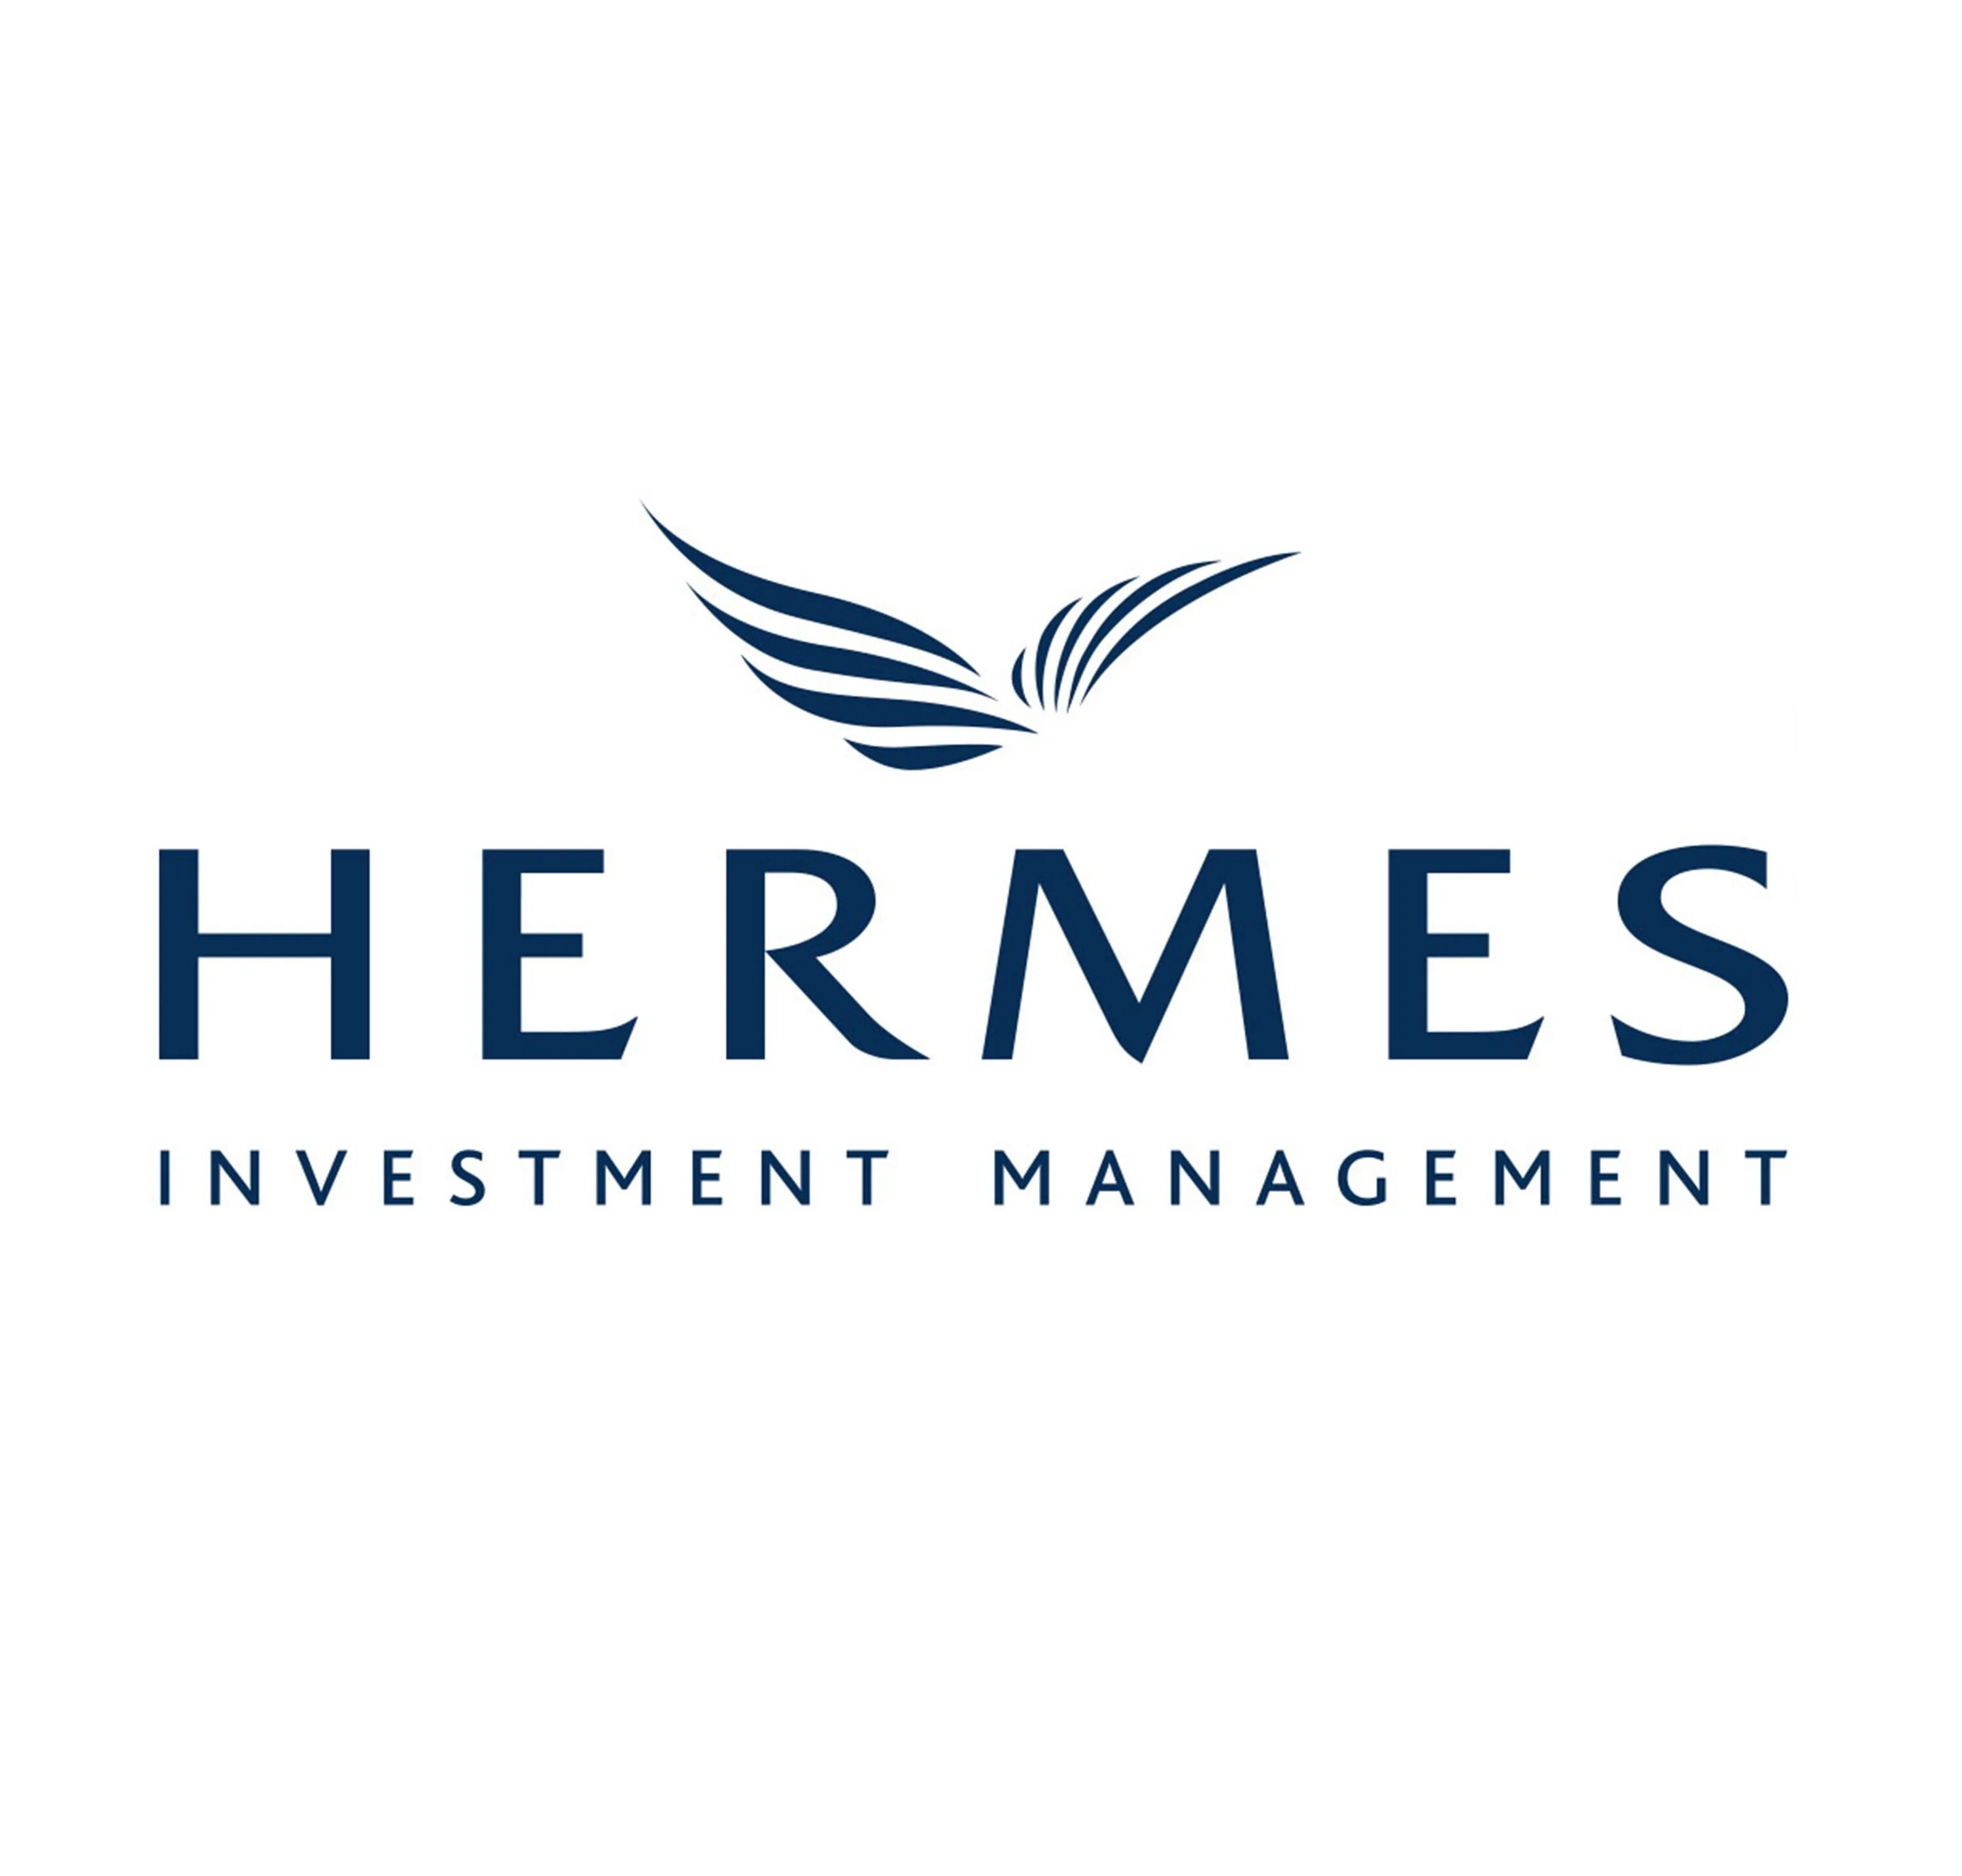 Фирма гермес. Гермес эмблема. Hermes лейбл. Гермес одежда логотип. Hermes Management логотип.